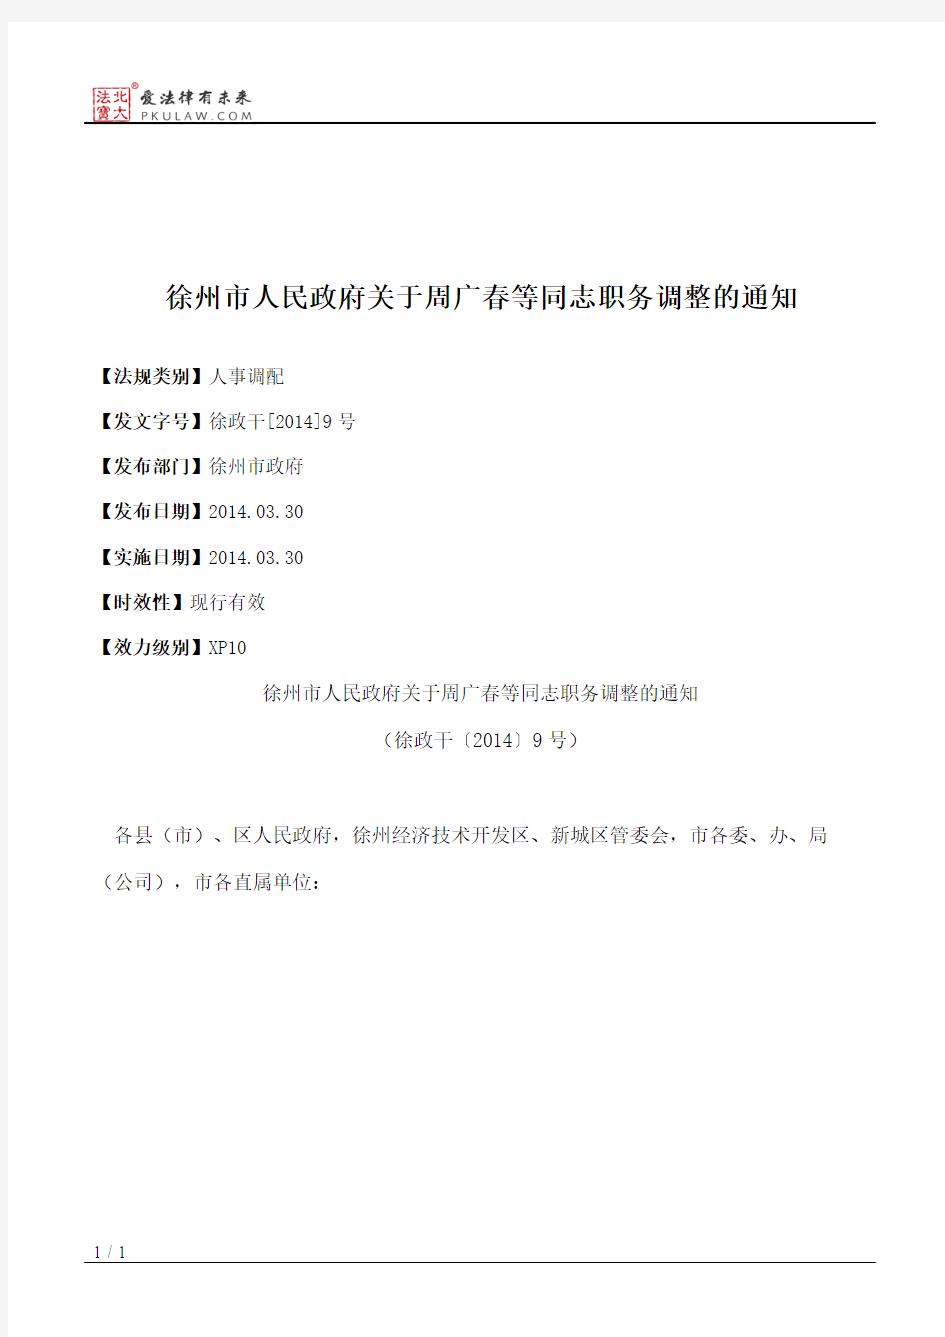 徐州市人民政府关于周广春等同志职务调整的通知